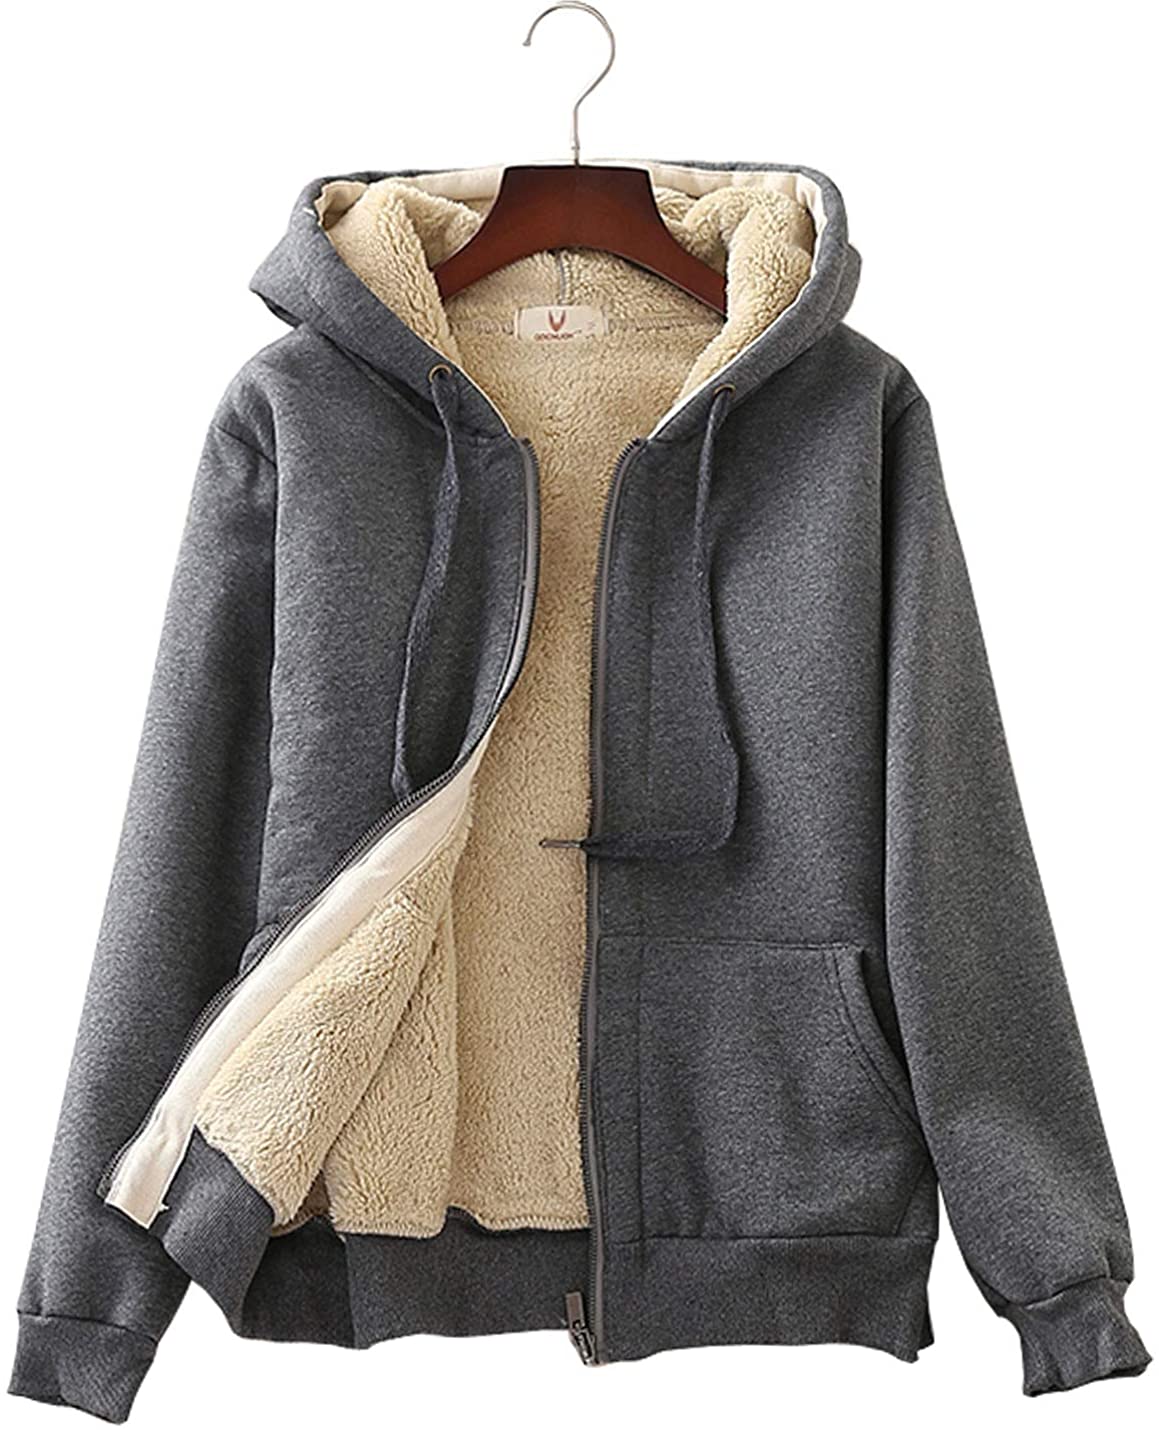 Kcocoo Hoodies for Women Sherpa Jacket Warm Winter Fleece